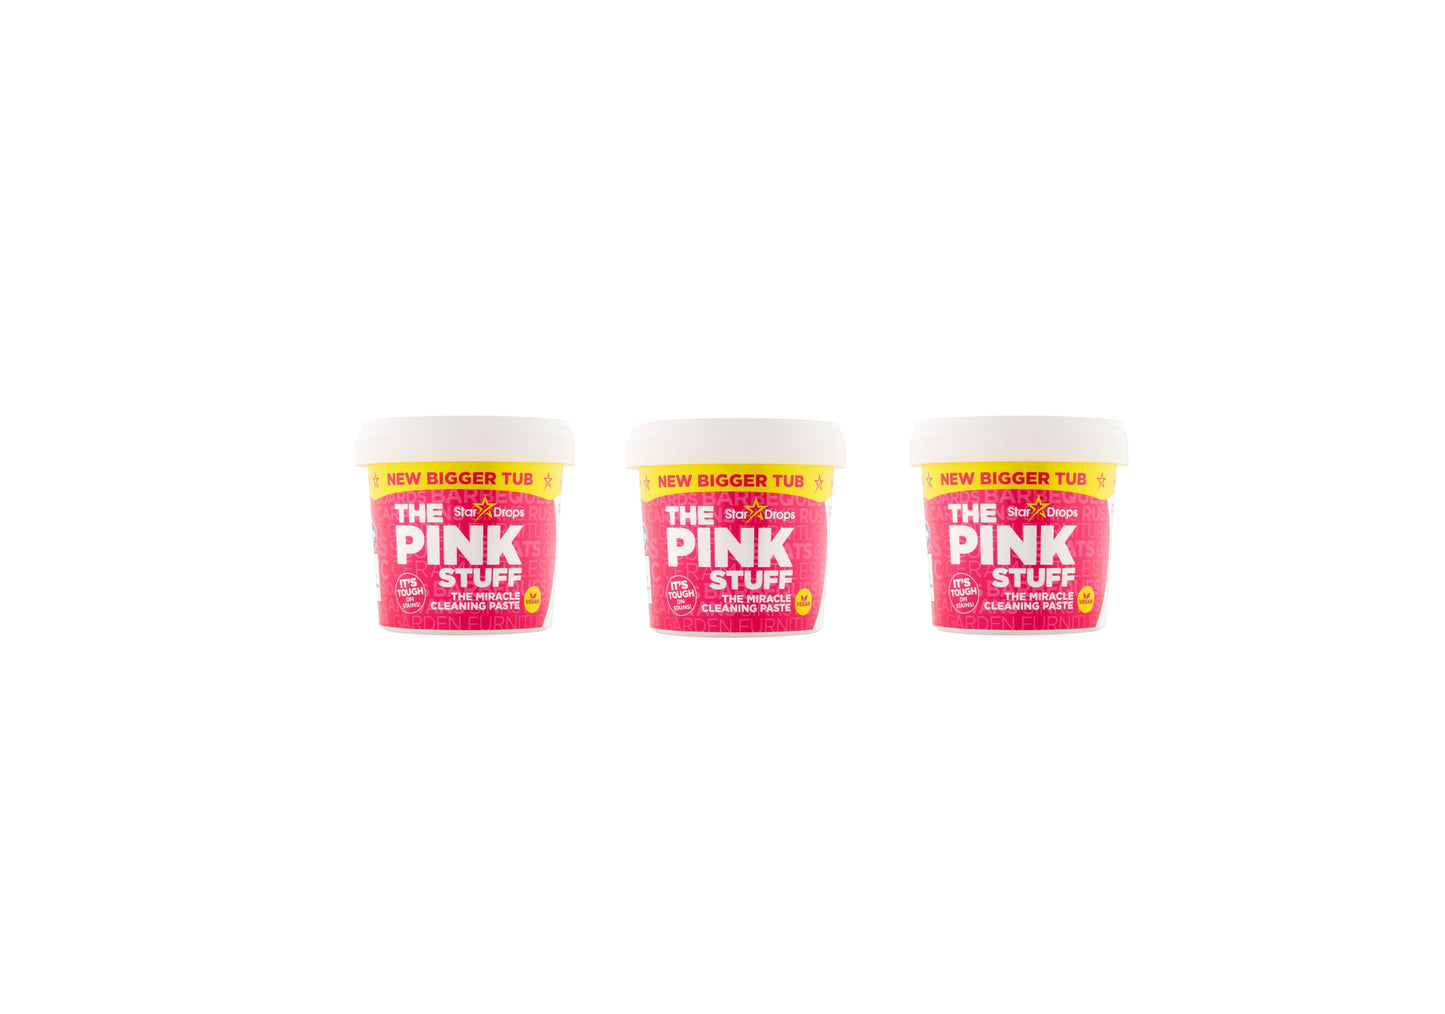 Stardrops The Pink Stuff - Pasta detergente 850 grammi